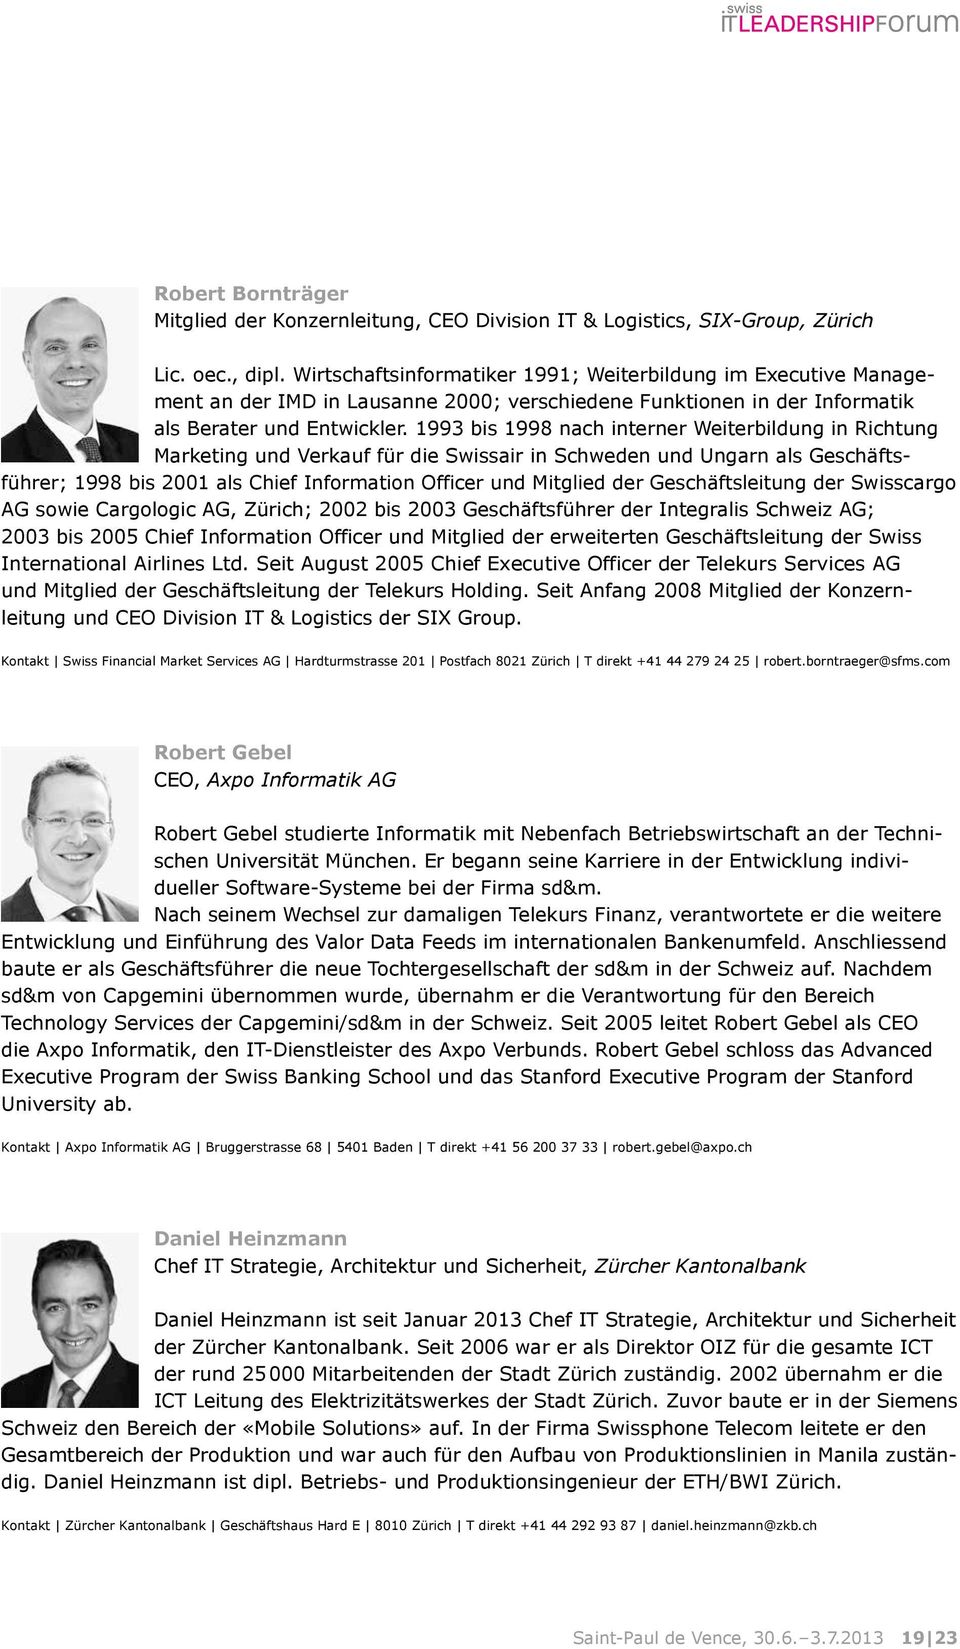 1993 bis 1998 nach interner Weiterbildung in Richtung Marketing und Verkauf für die Swissair in Schweden und Ungarn als Geschäftsführer; 1998 bis 2001 als Chief Information Officer und Mitglied der